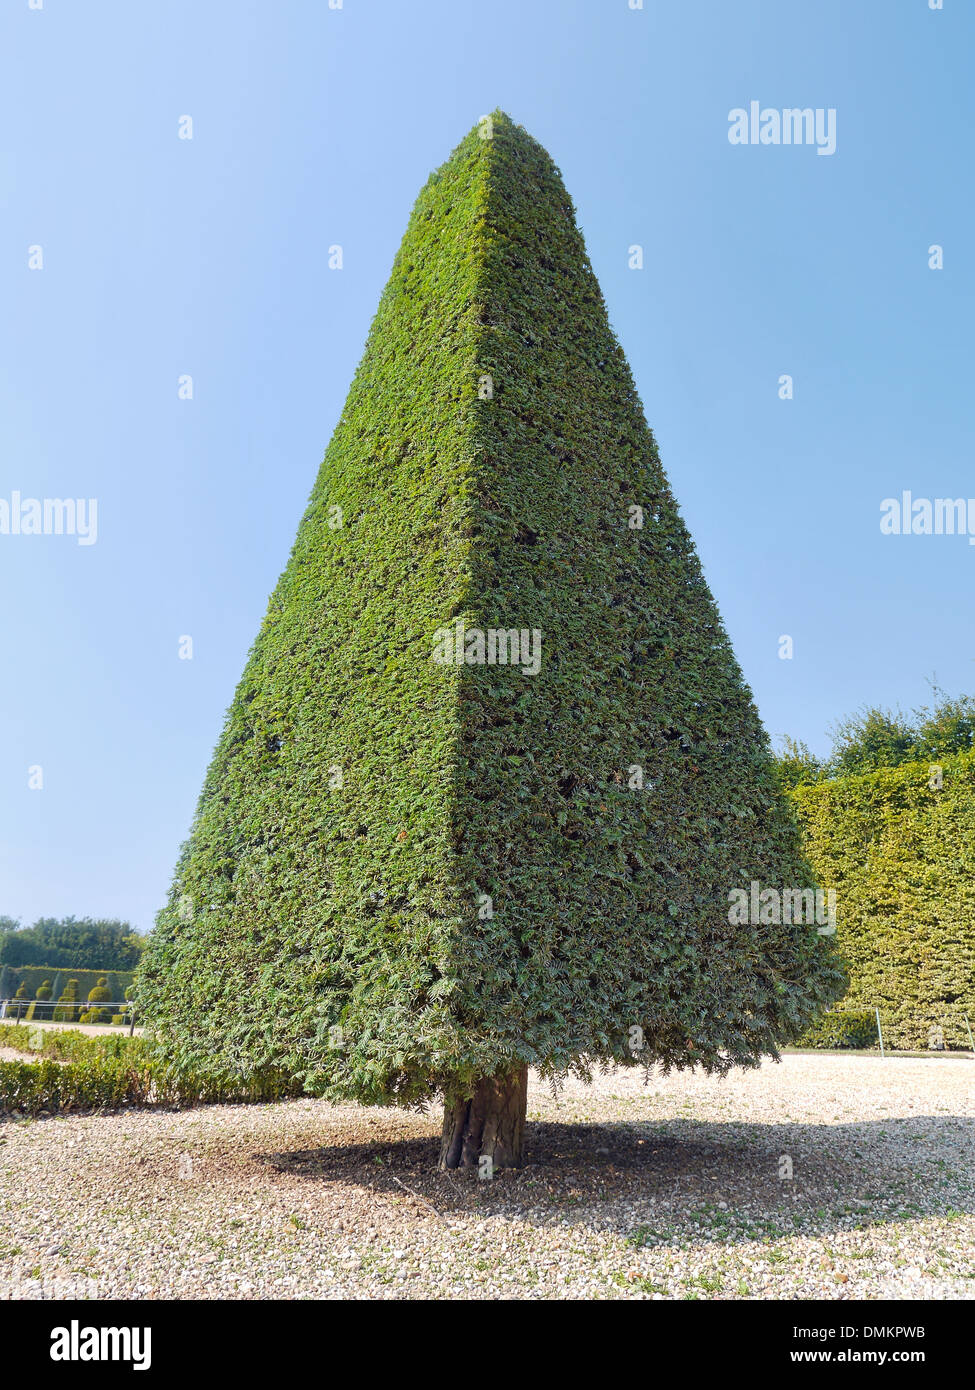 Uno de los hermosos arbustos recortados perenne encontrada en el jardín de Versalles, Francia Foto de stock